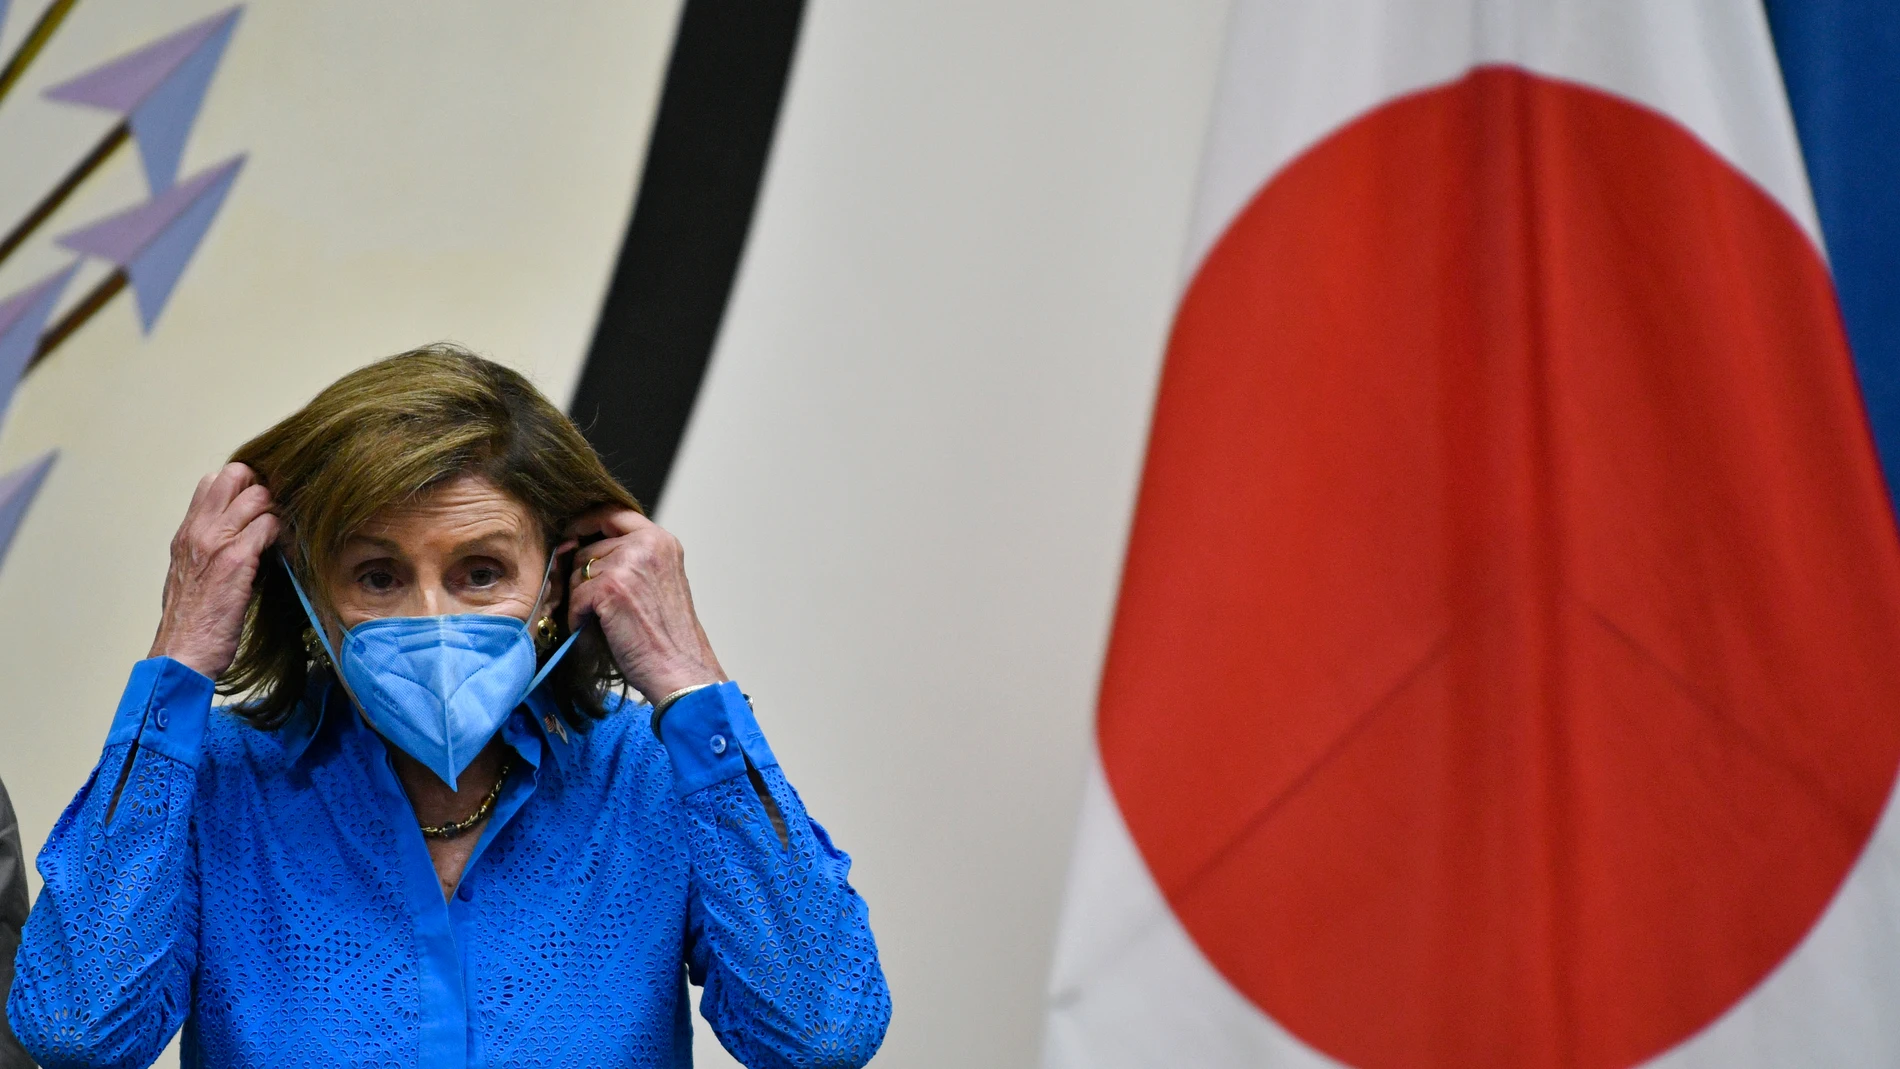 La presidenta de la Cámara de Representantes, Nancy Pelosi, se pone la mascarilla durante una rueda de prensa en Tokio